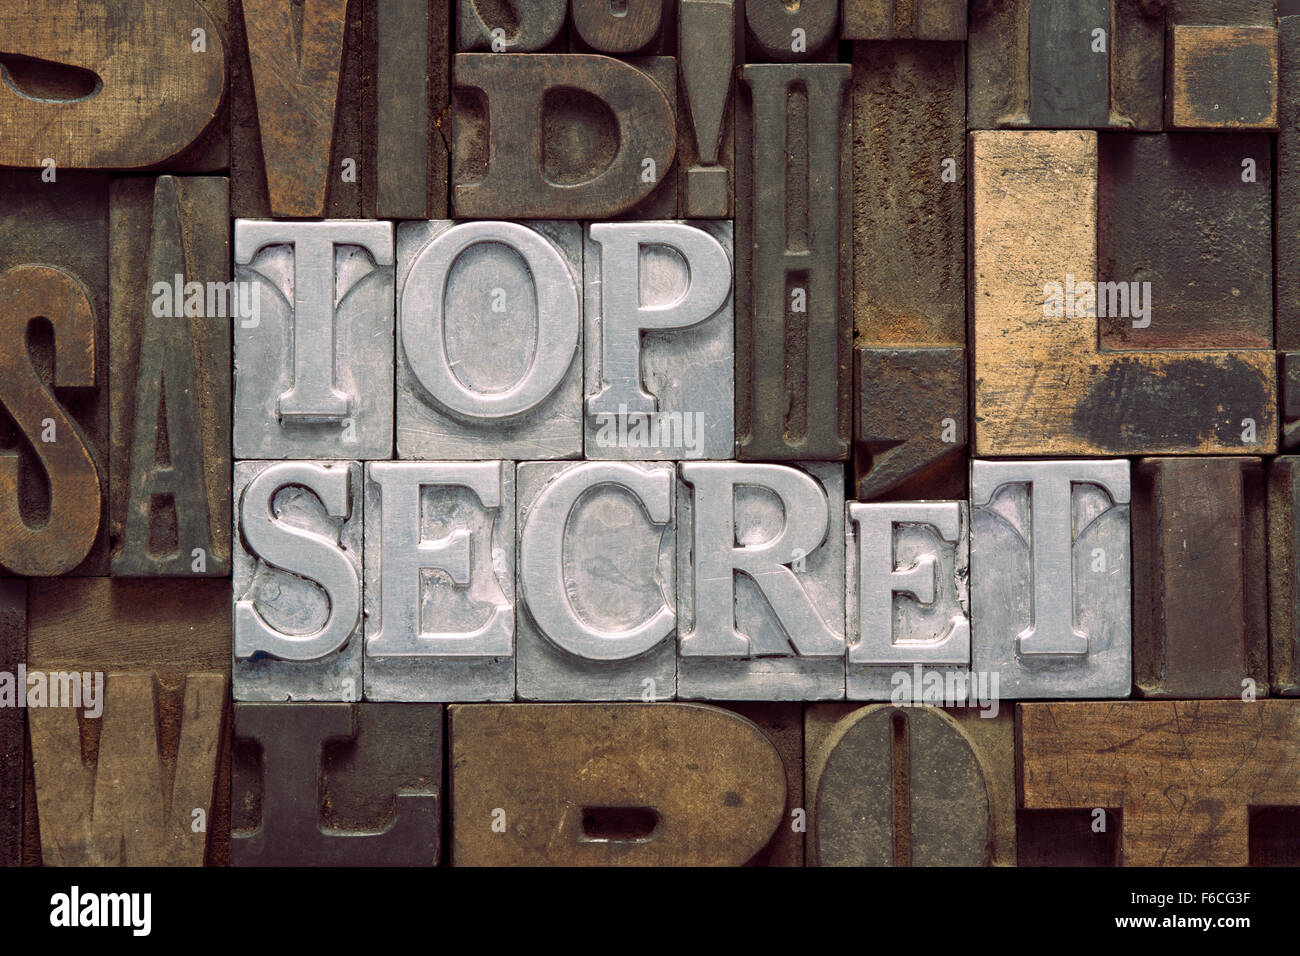 Top Secret frase hecha de tipografía metálica en bloques de letras de madera mixta Foto de stock